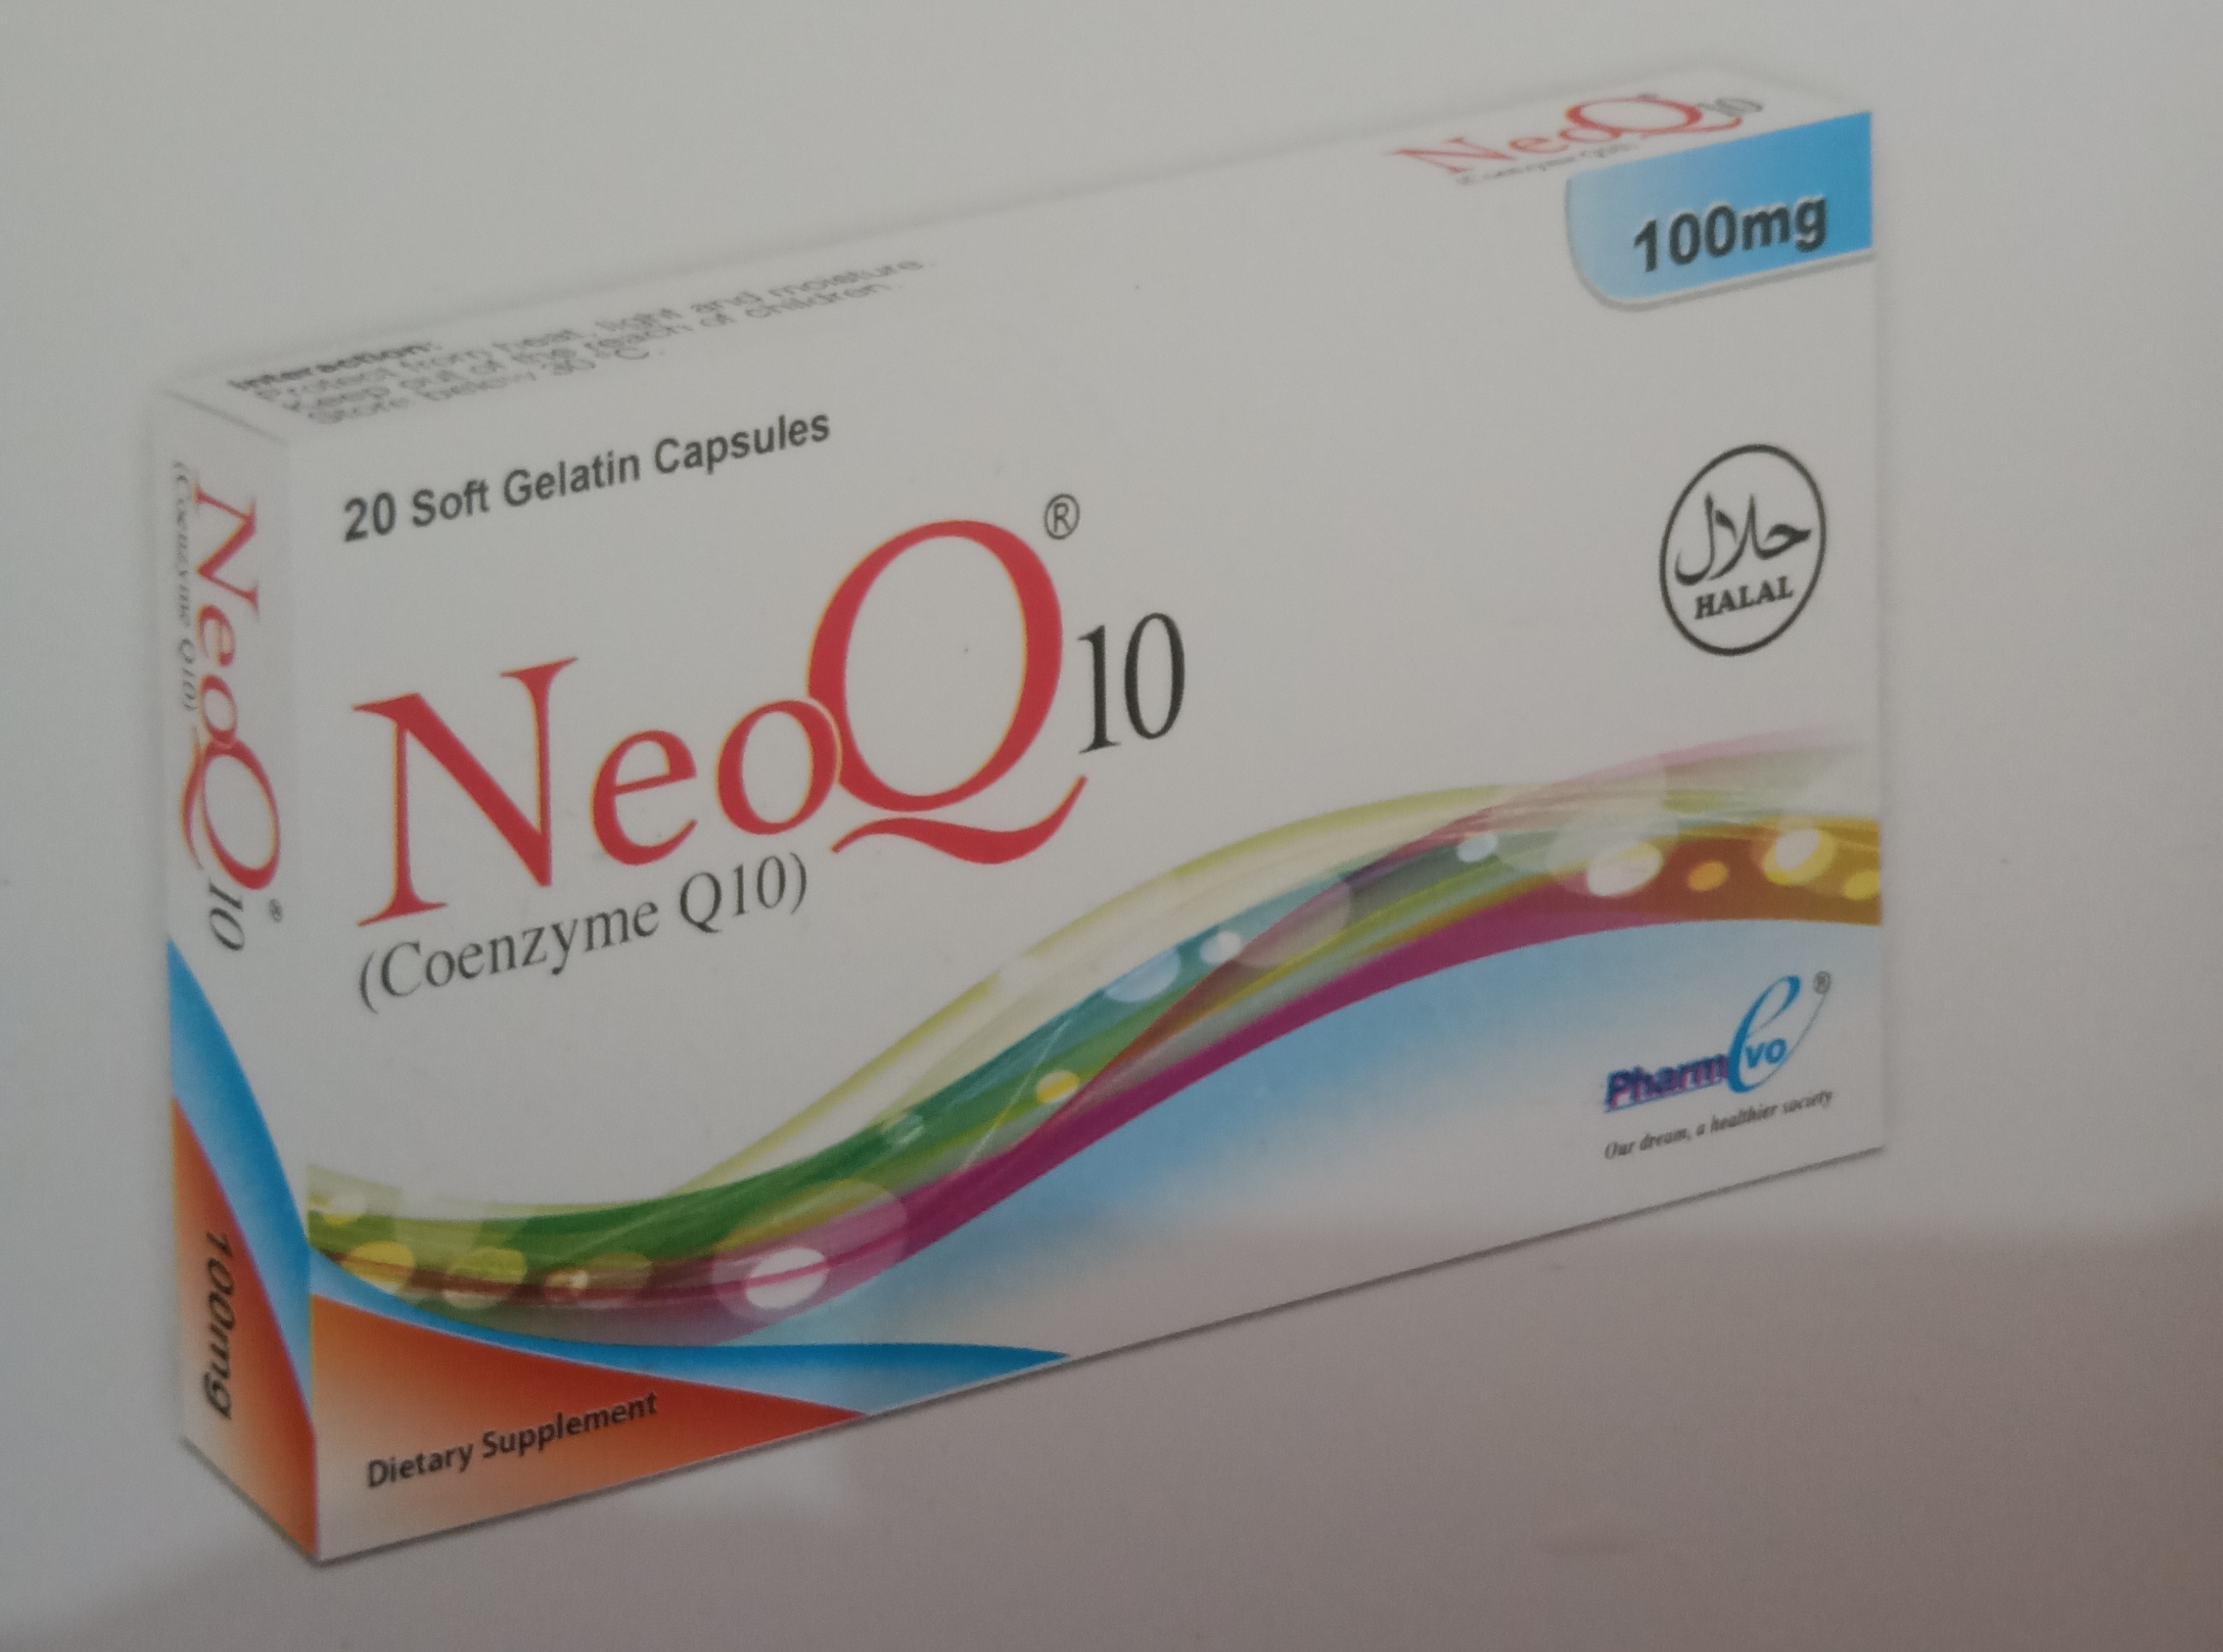 NeoQ 10 (Coenzyme Q10)